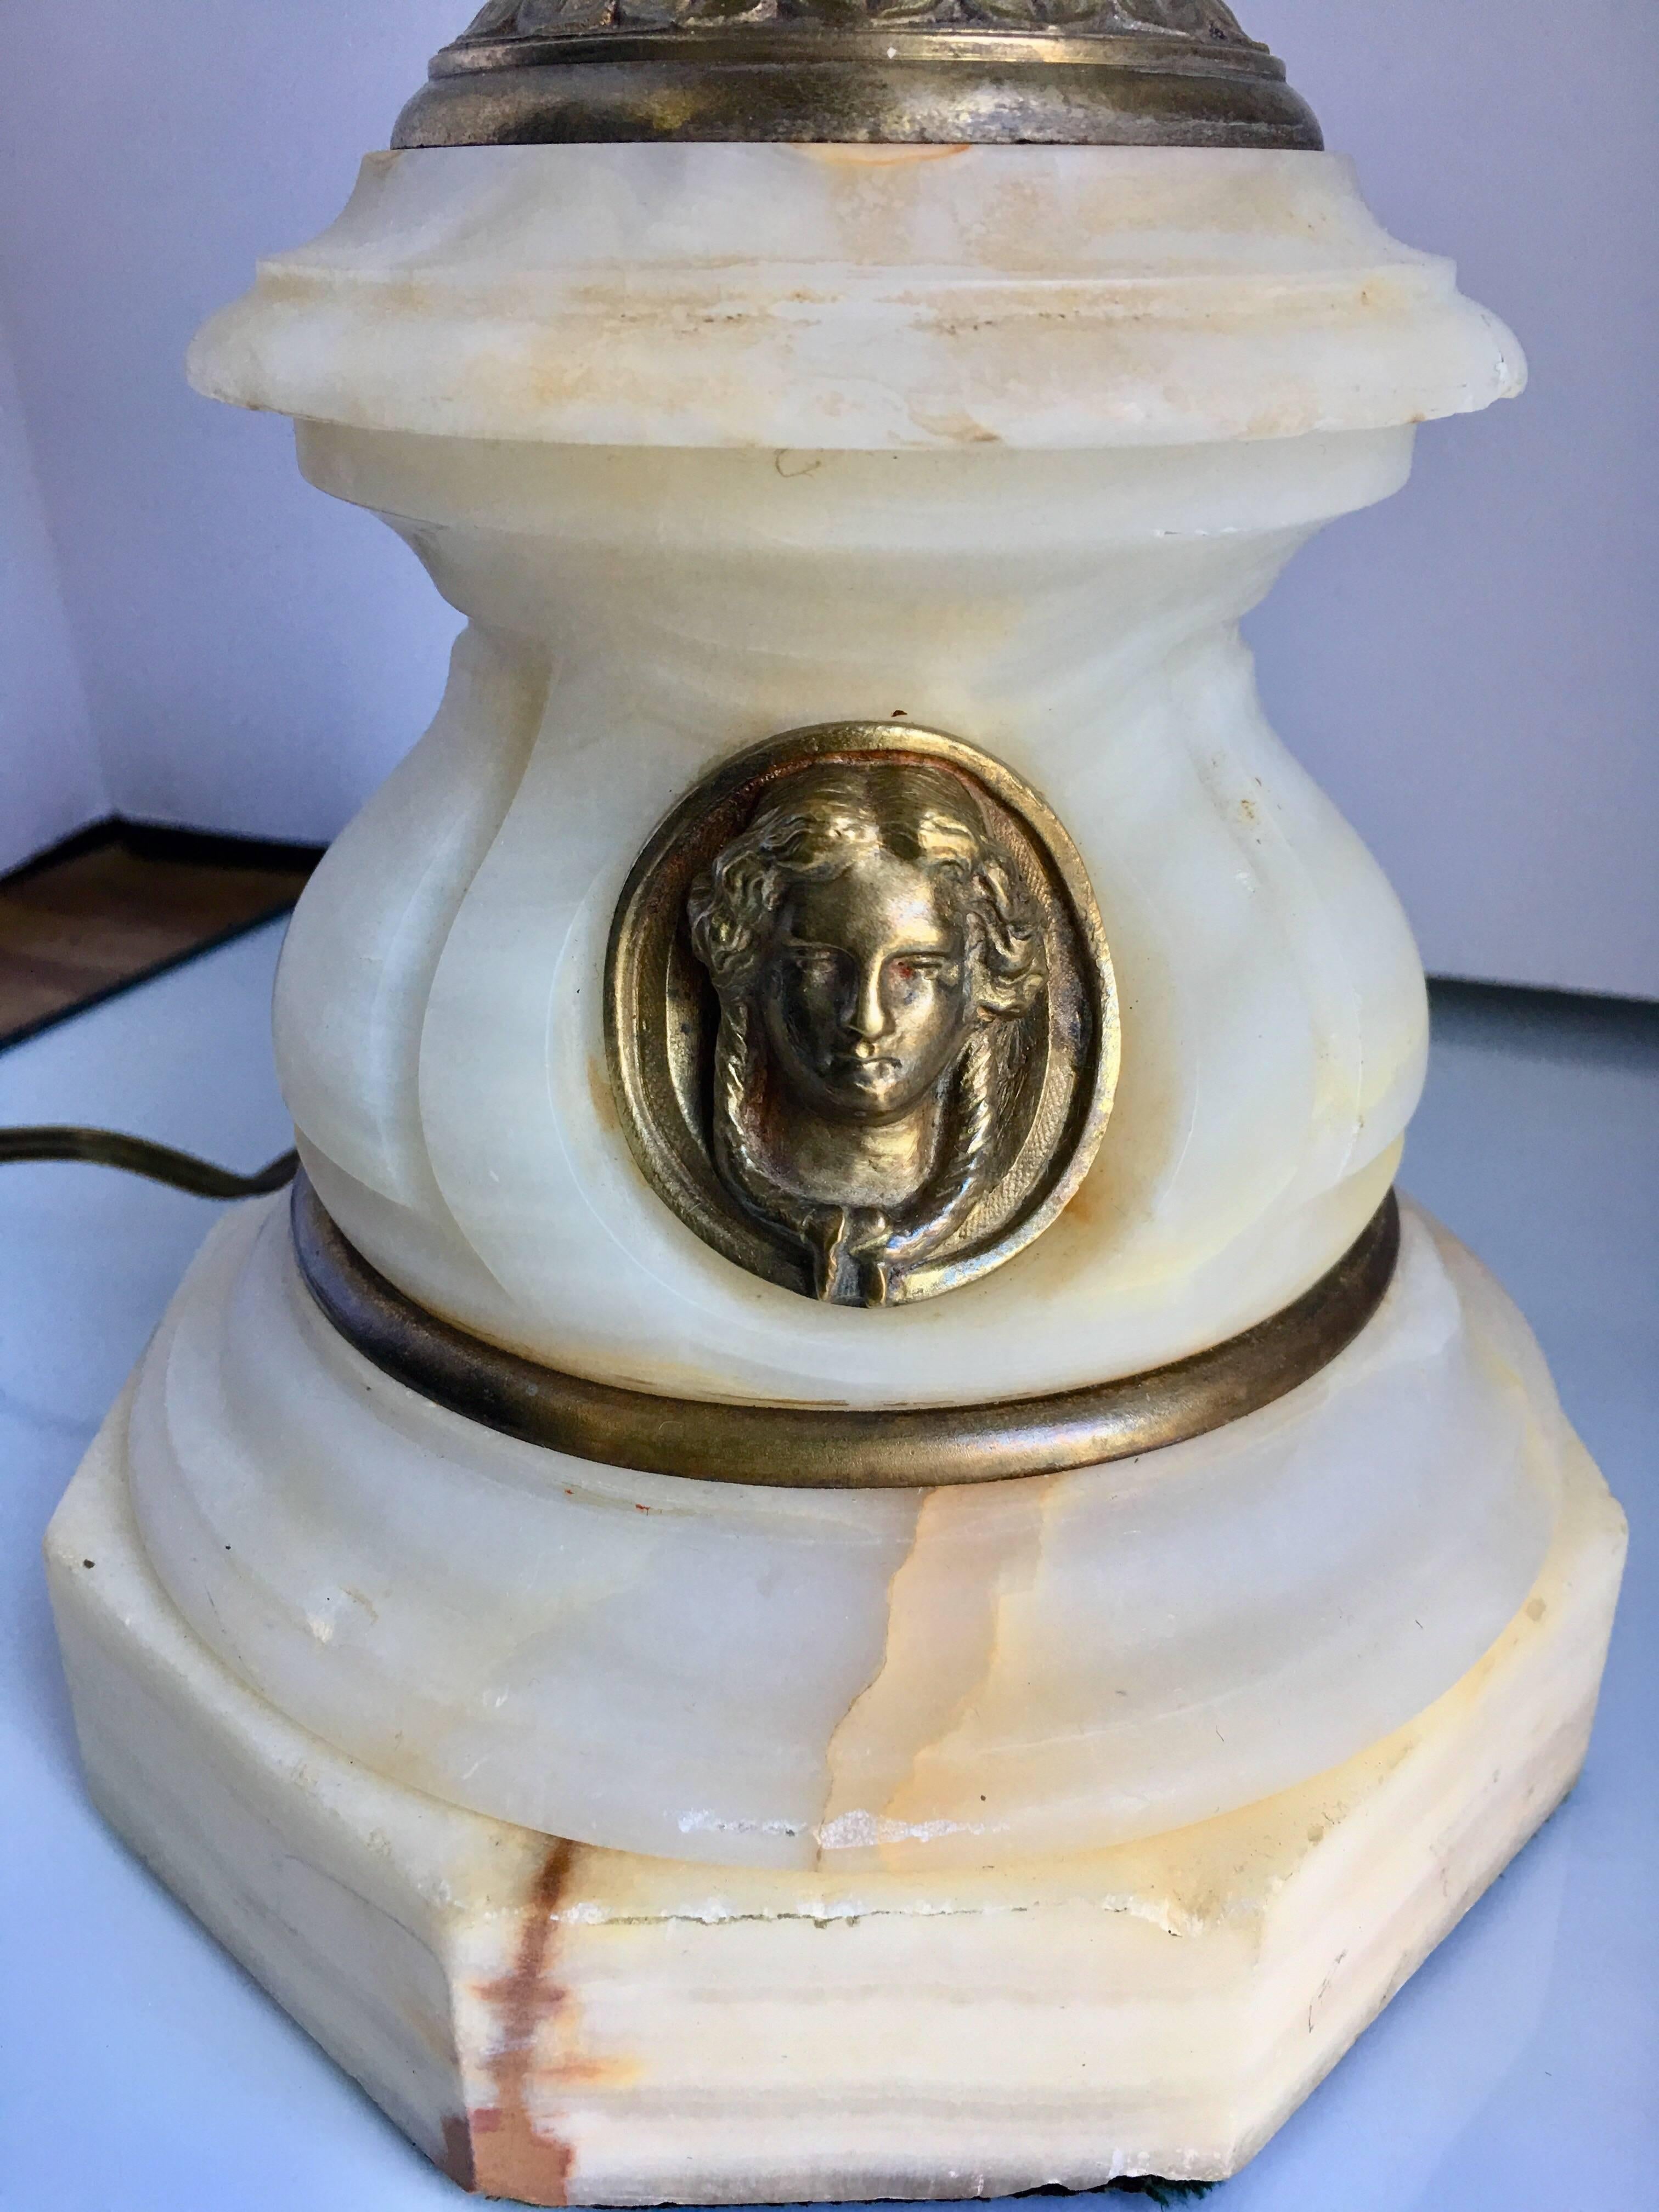 Lampe de table française de style néoclassique des années 1920 présentant une urne en métal argenté et en laiton montée sur une base octogonale en marbre avec un buste figuratif décoratif, France, années 1920.
Abat-jour non inclus.